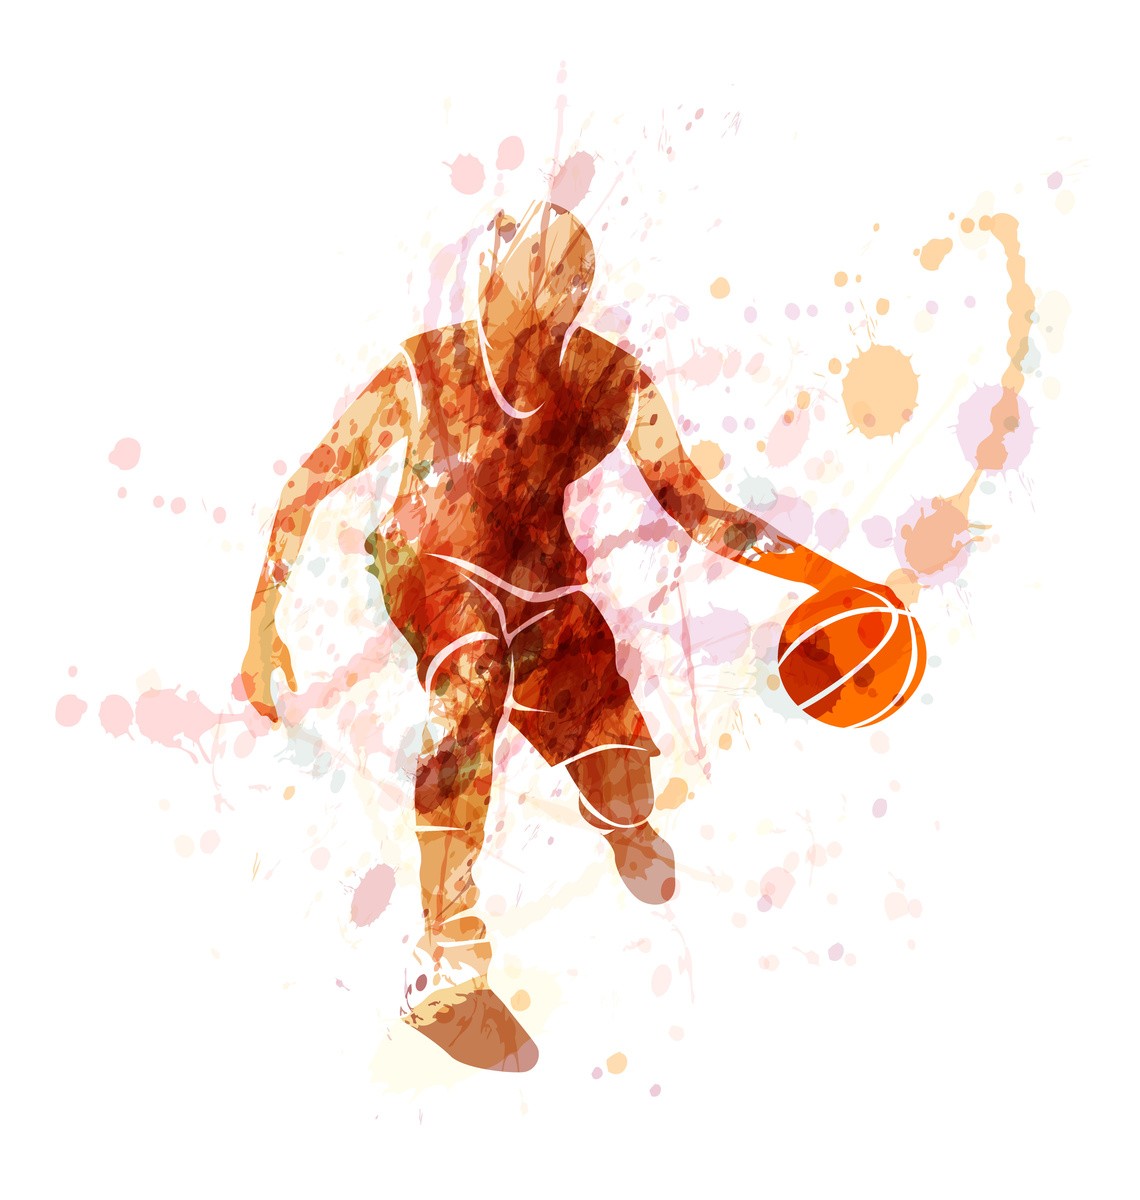 Ρόλερ - Ρολοκουρτίνα Σχέδιο Sports - Αθλητισμός 23 Μπασκετμπολίστας